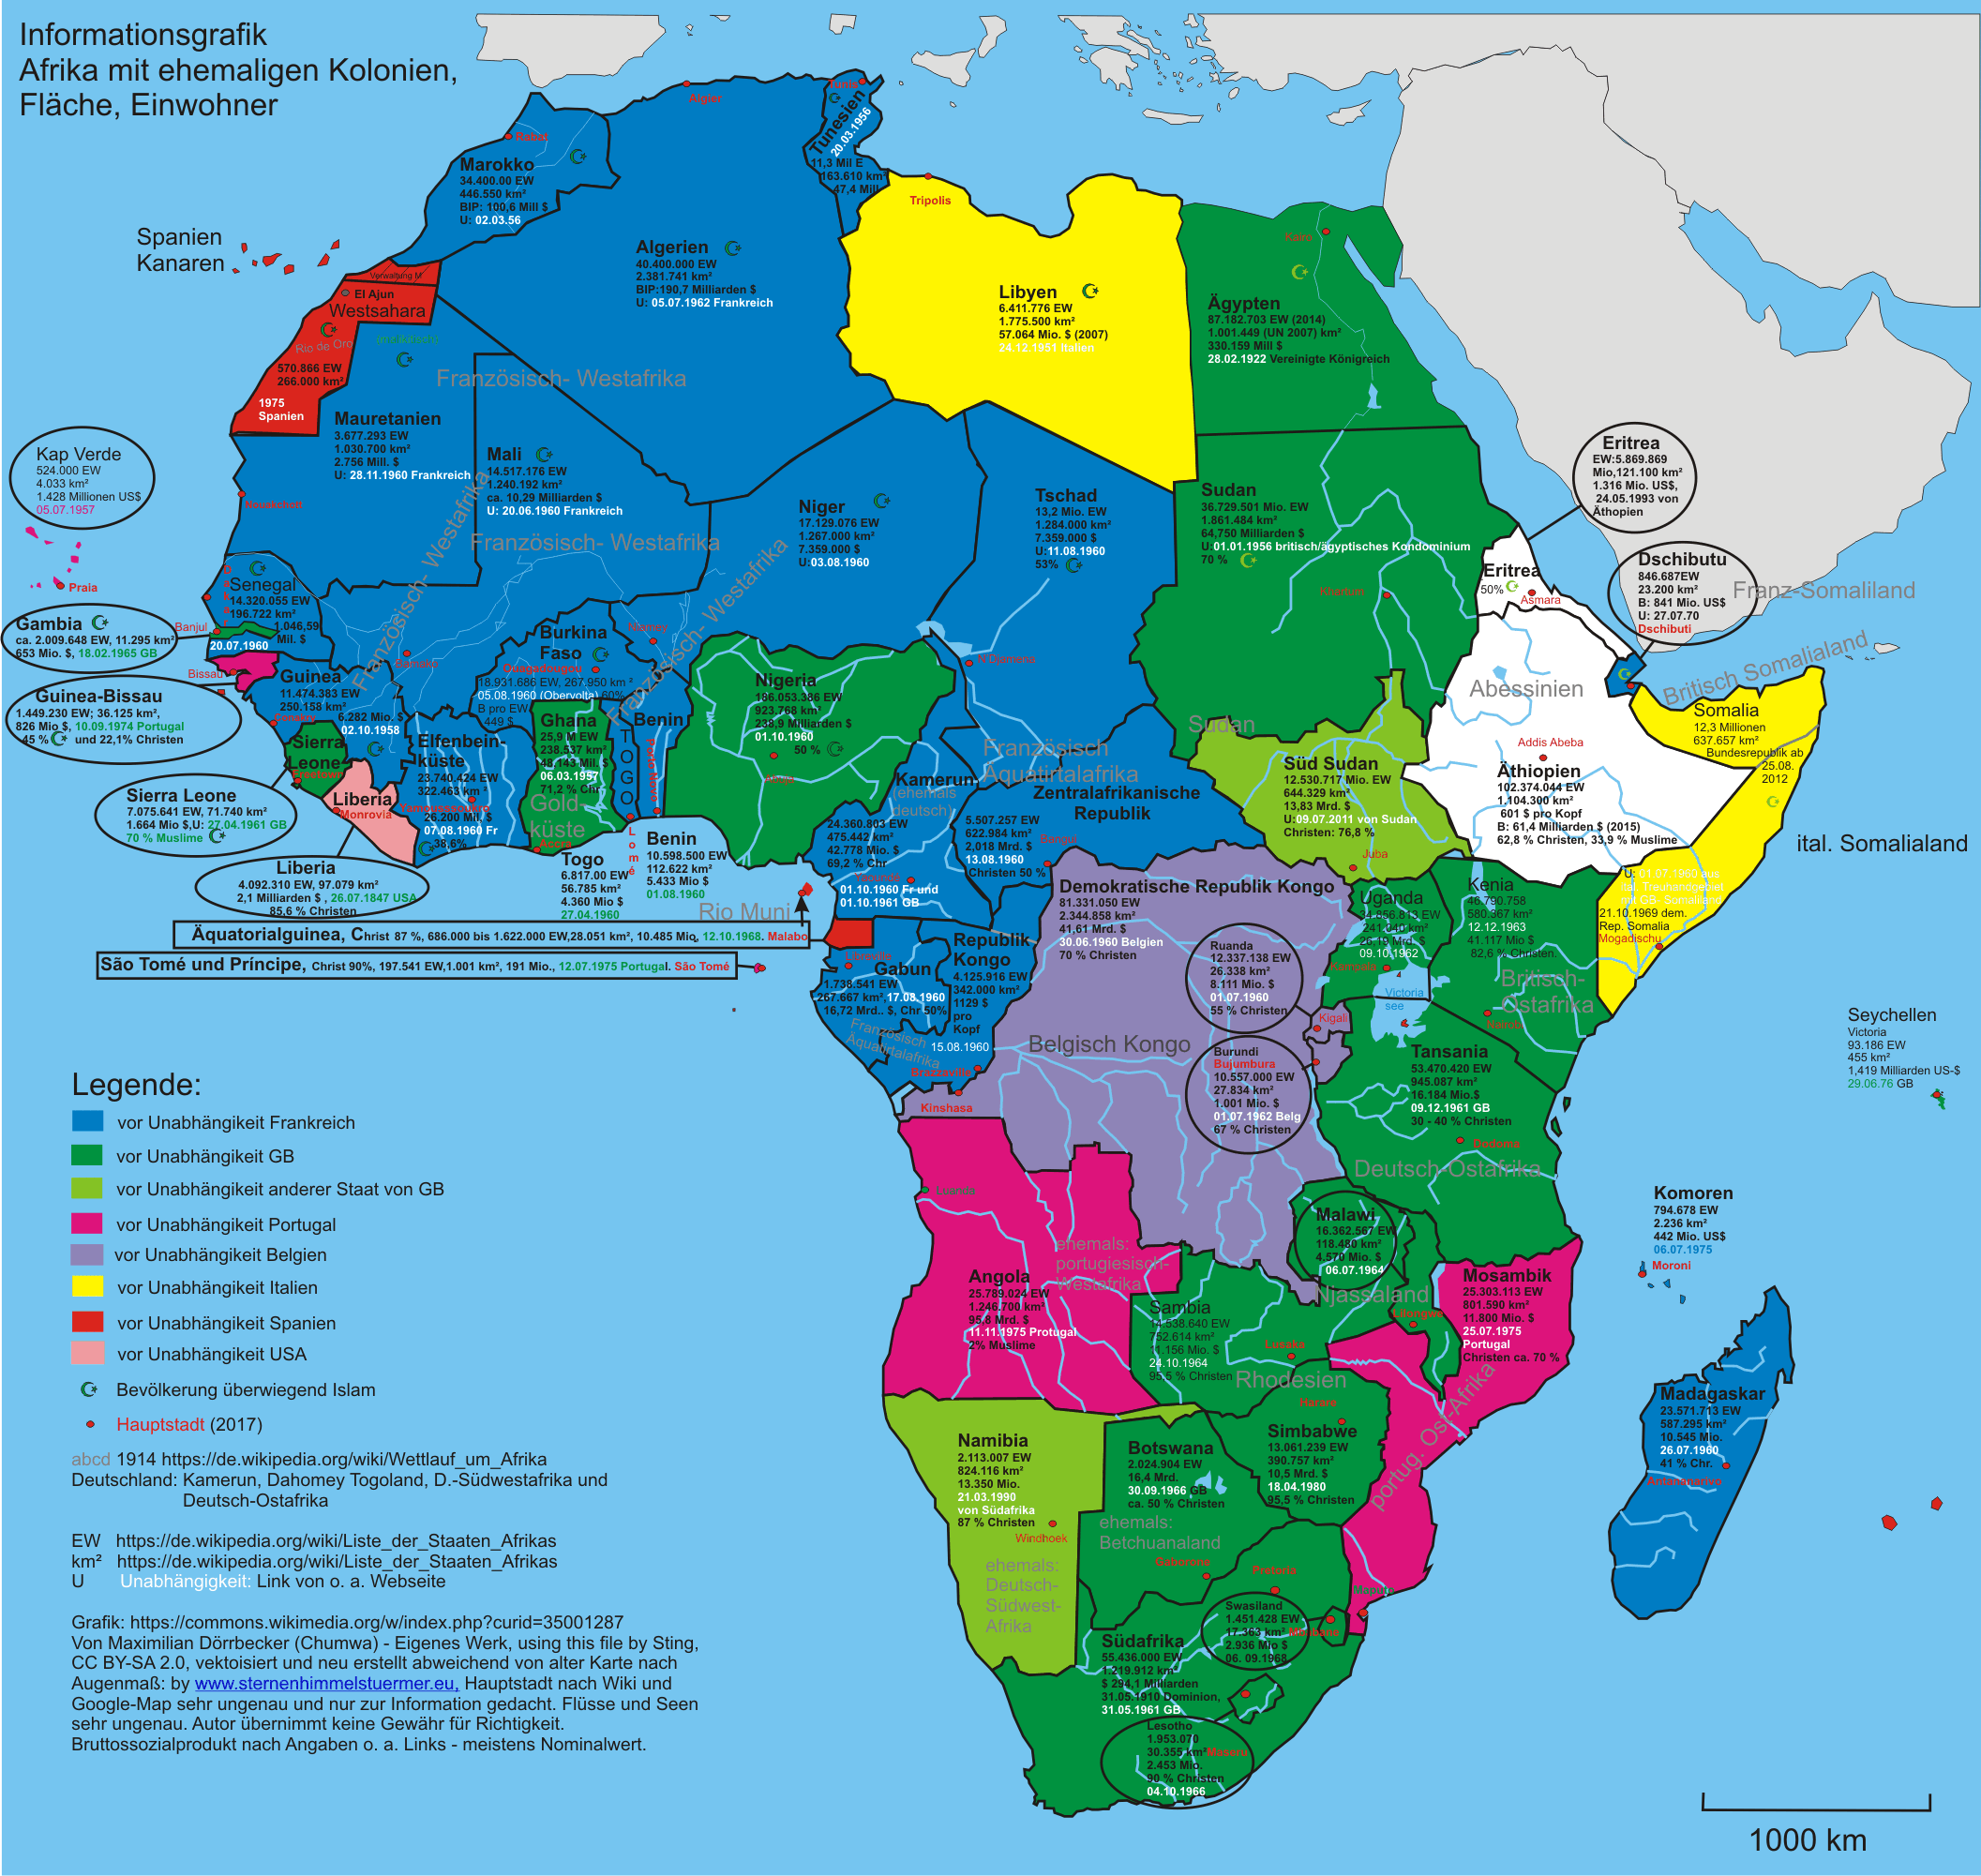 Grafik von Afrika, Quelle: Wikipedia mit Eigenbearbeitung auf Grafik dokumentiert